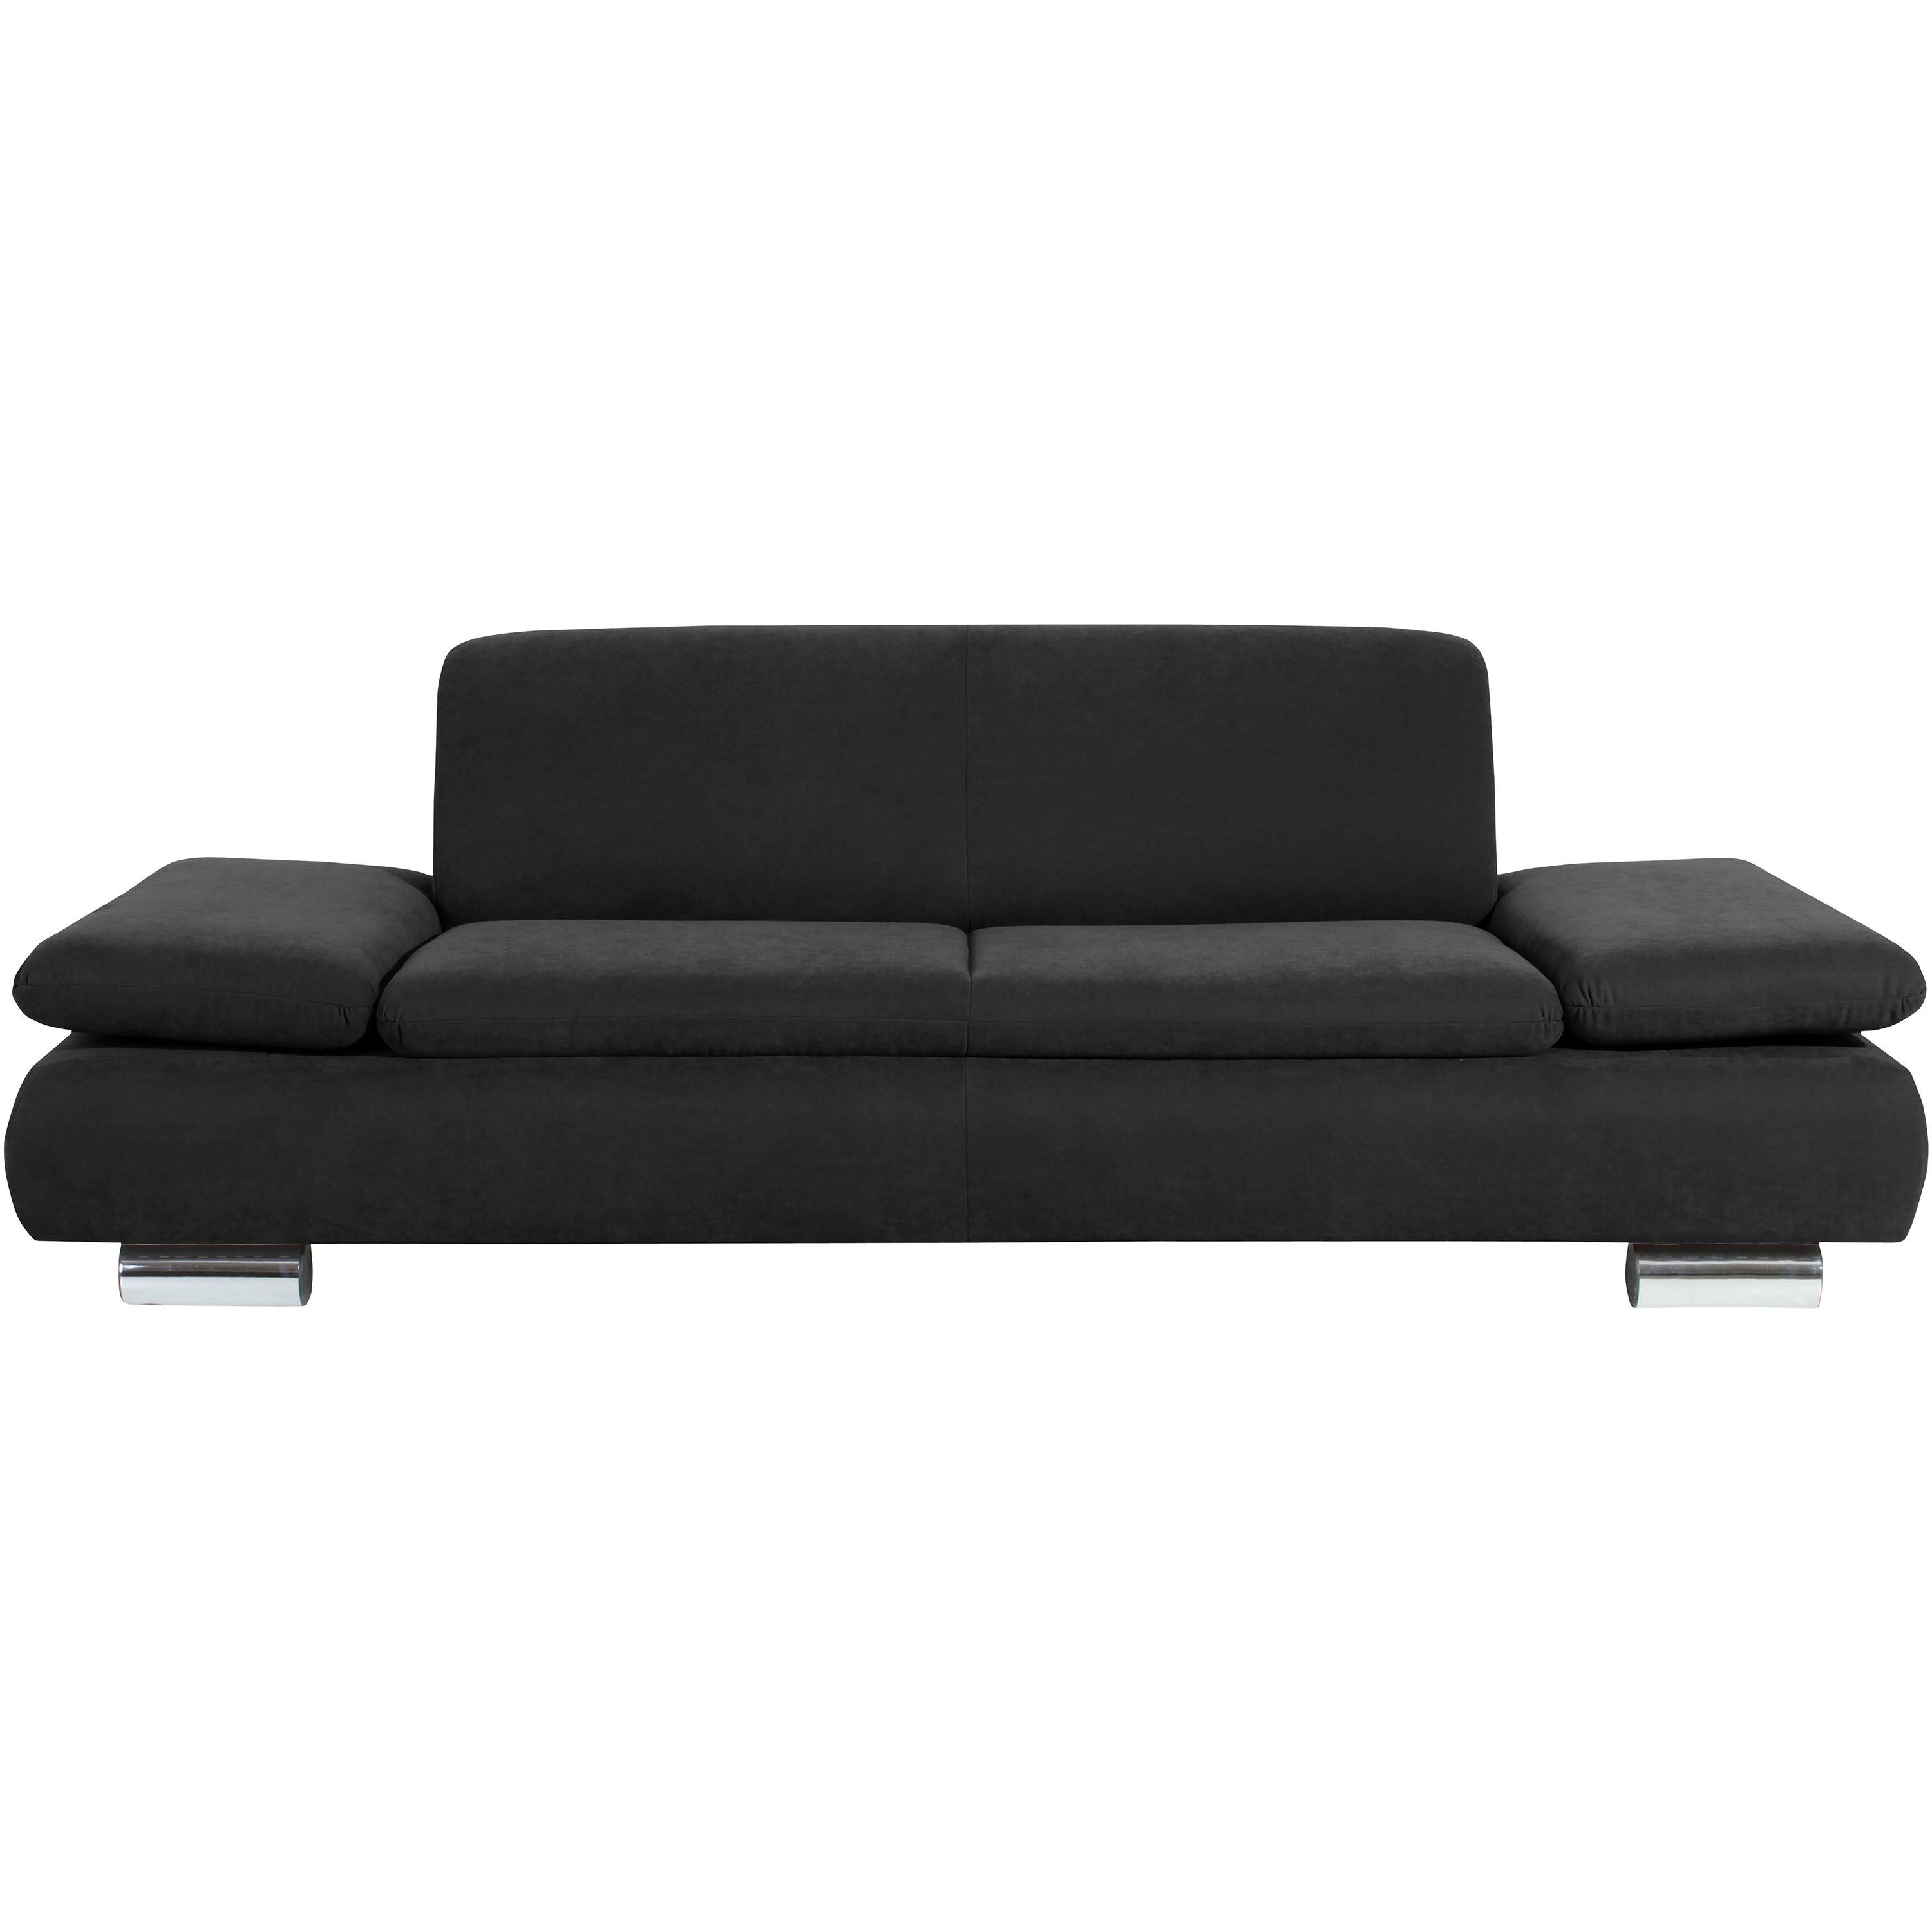 frontansicht von einem schwarzen sofa mit verchromten metallfüssen